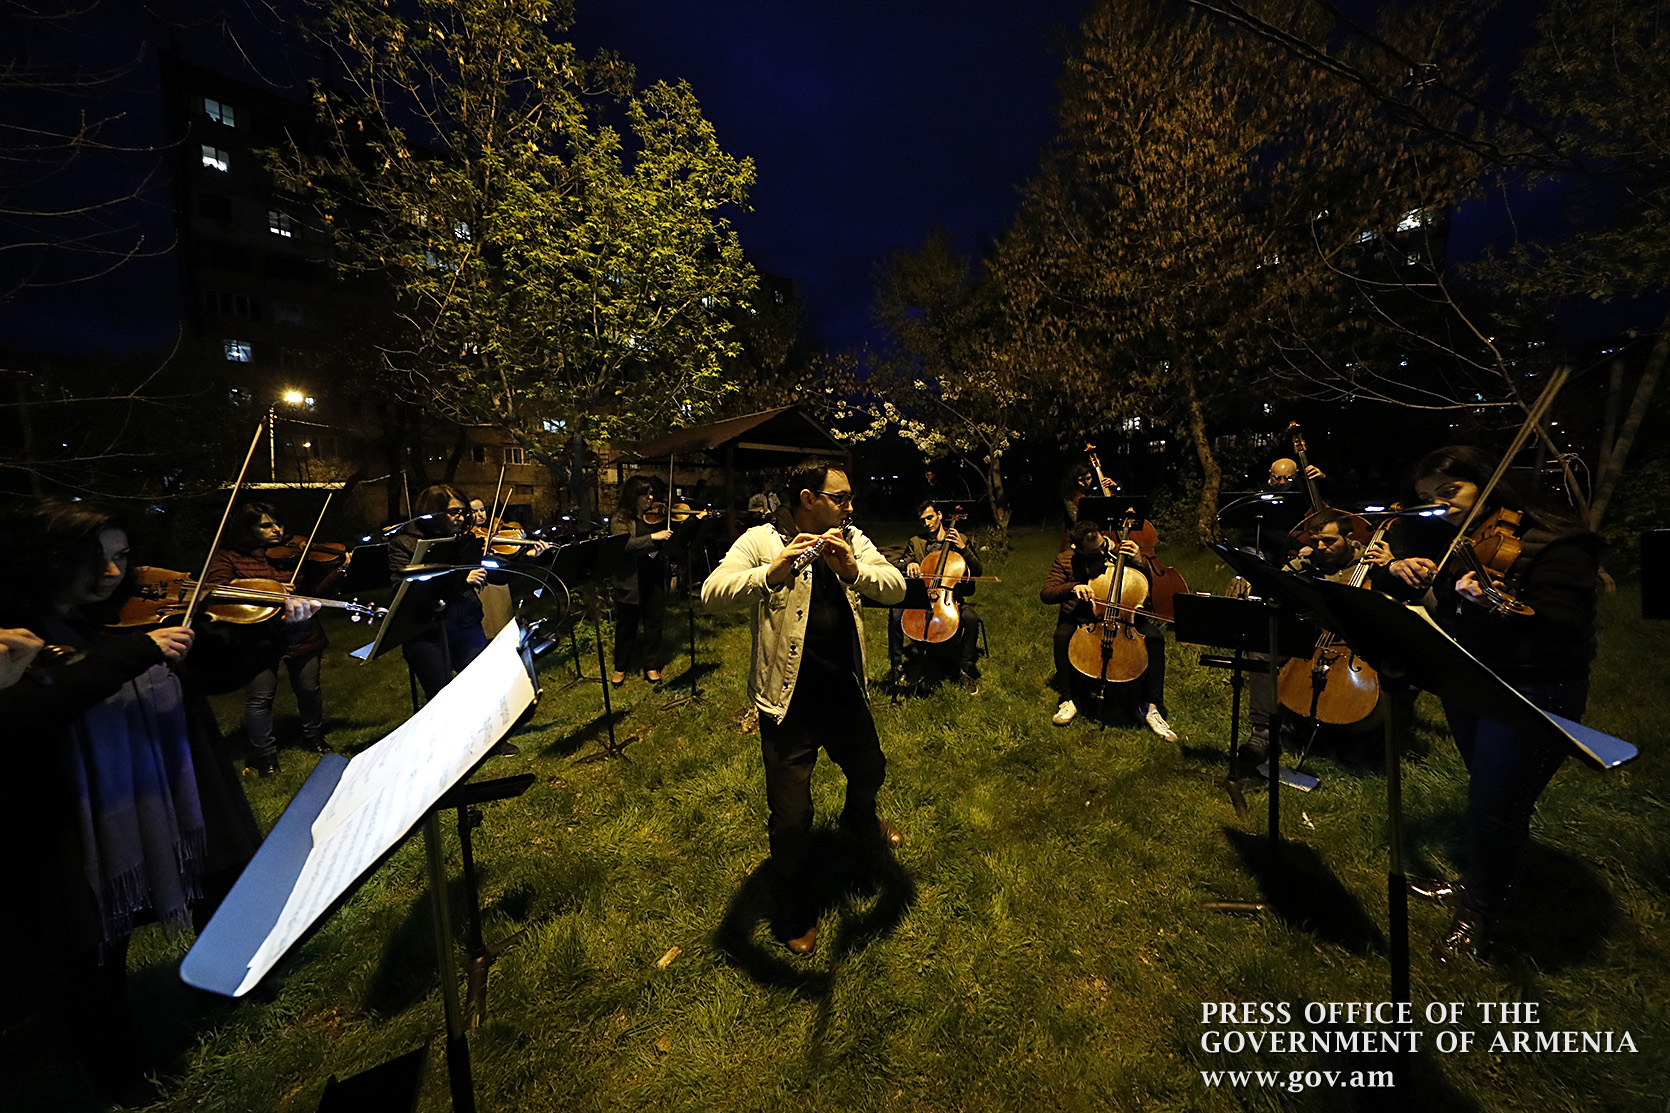 Հայաստանի ազգային ֆիլհարմոնիկ նվագախմբի անակնկալ կատարումը 15-րդ թաղամասի բակերից մեկում. Փաշինյանը տեսանյութ է հրապարակել